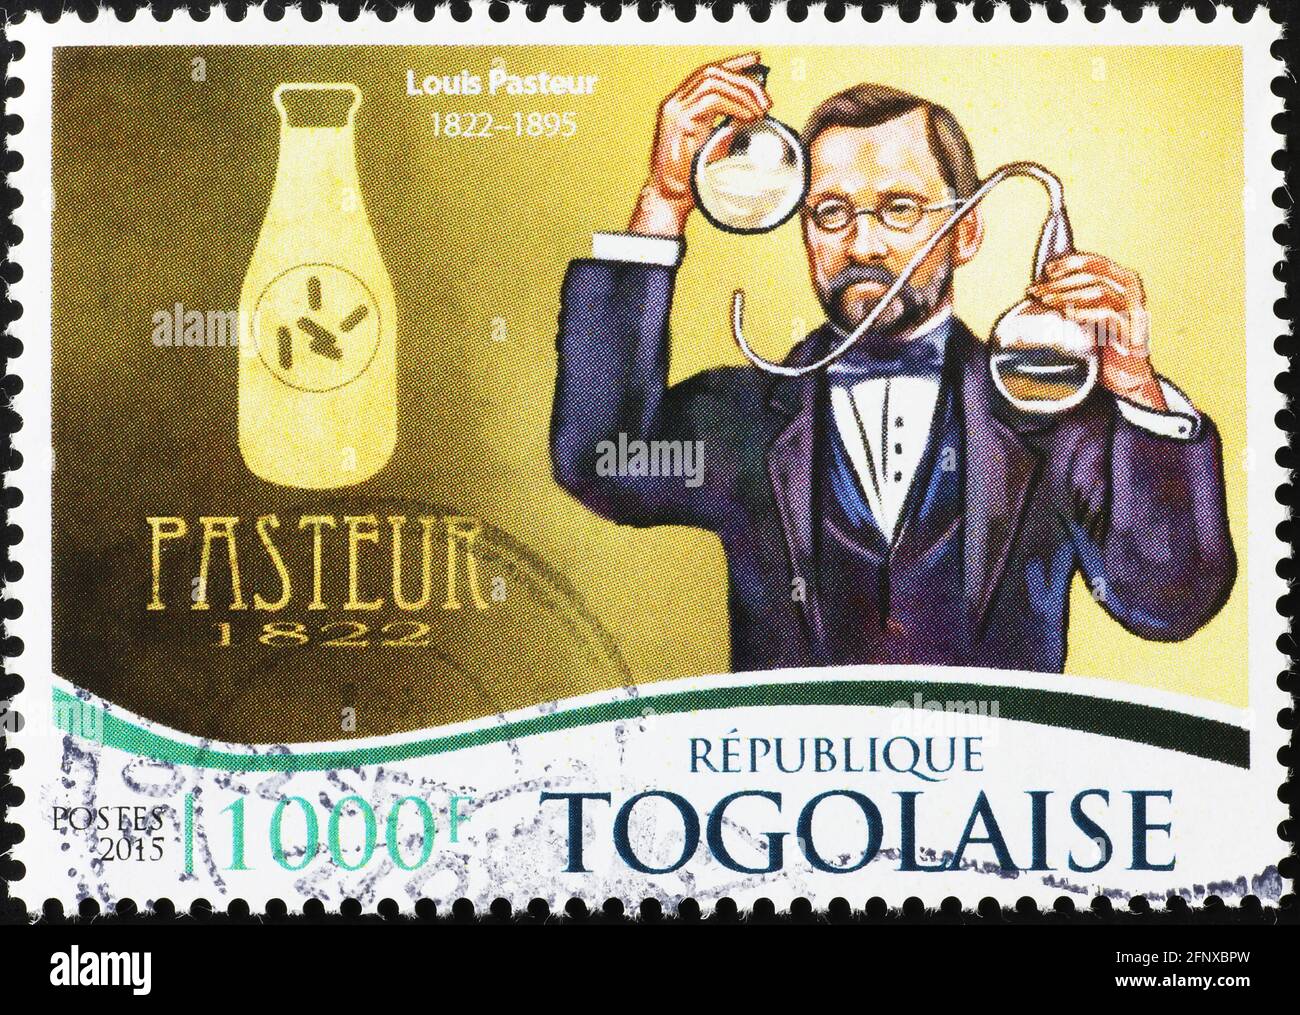 Louis Pasteur und eine Flasche Milch auf Briefmarke Stockfoto